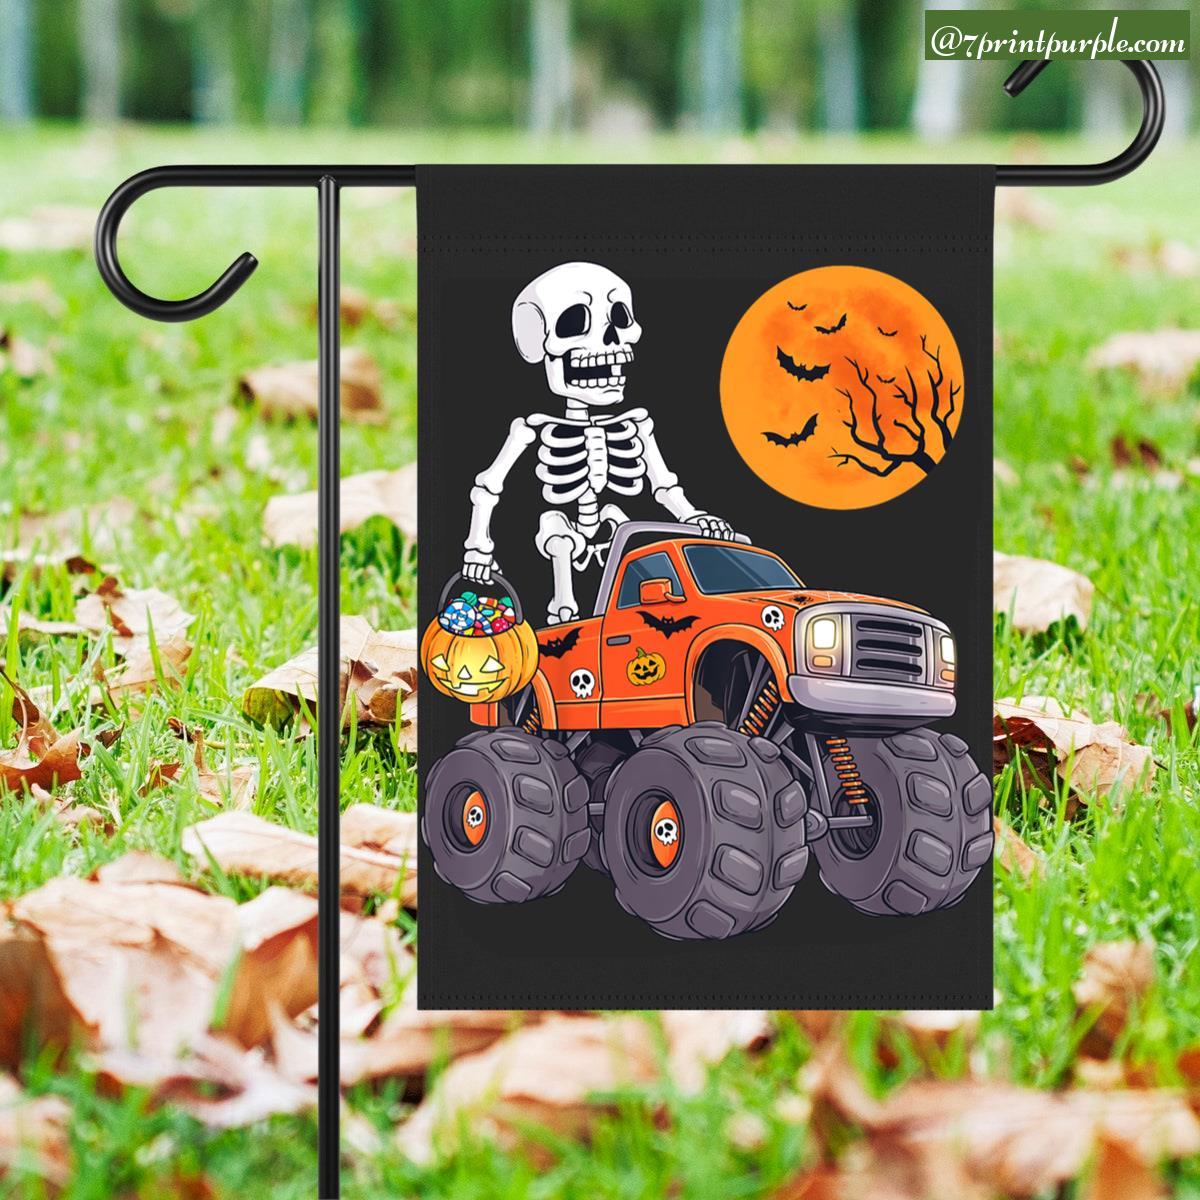 https://cdn.7printpurple.com/uploads/22091/Kids-Halloween-Skeleton-Riding-Monster-Truck-Funny-Toddler-Boys-1.jpg